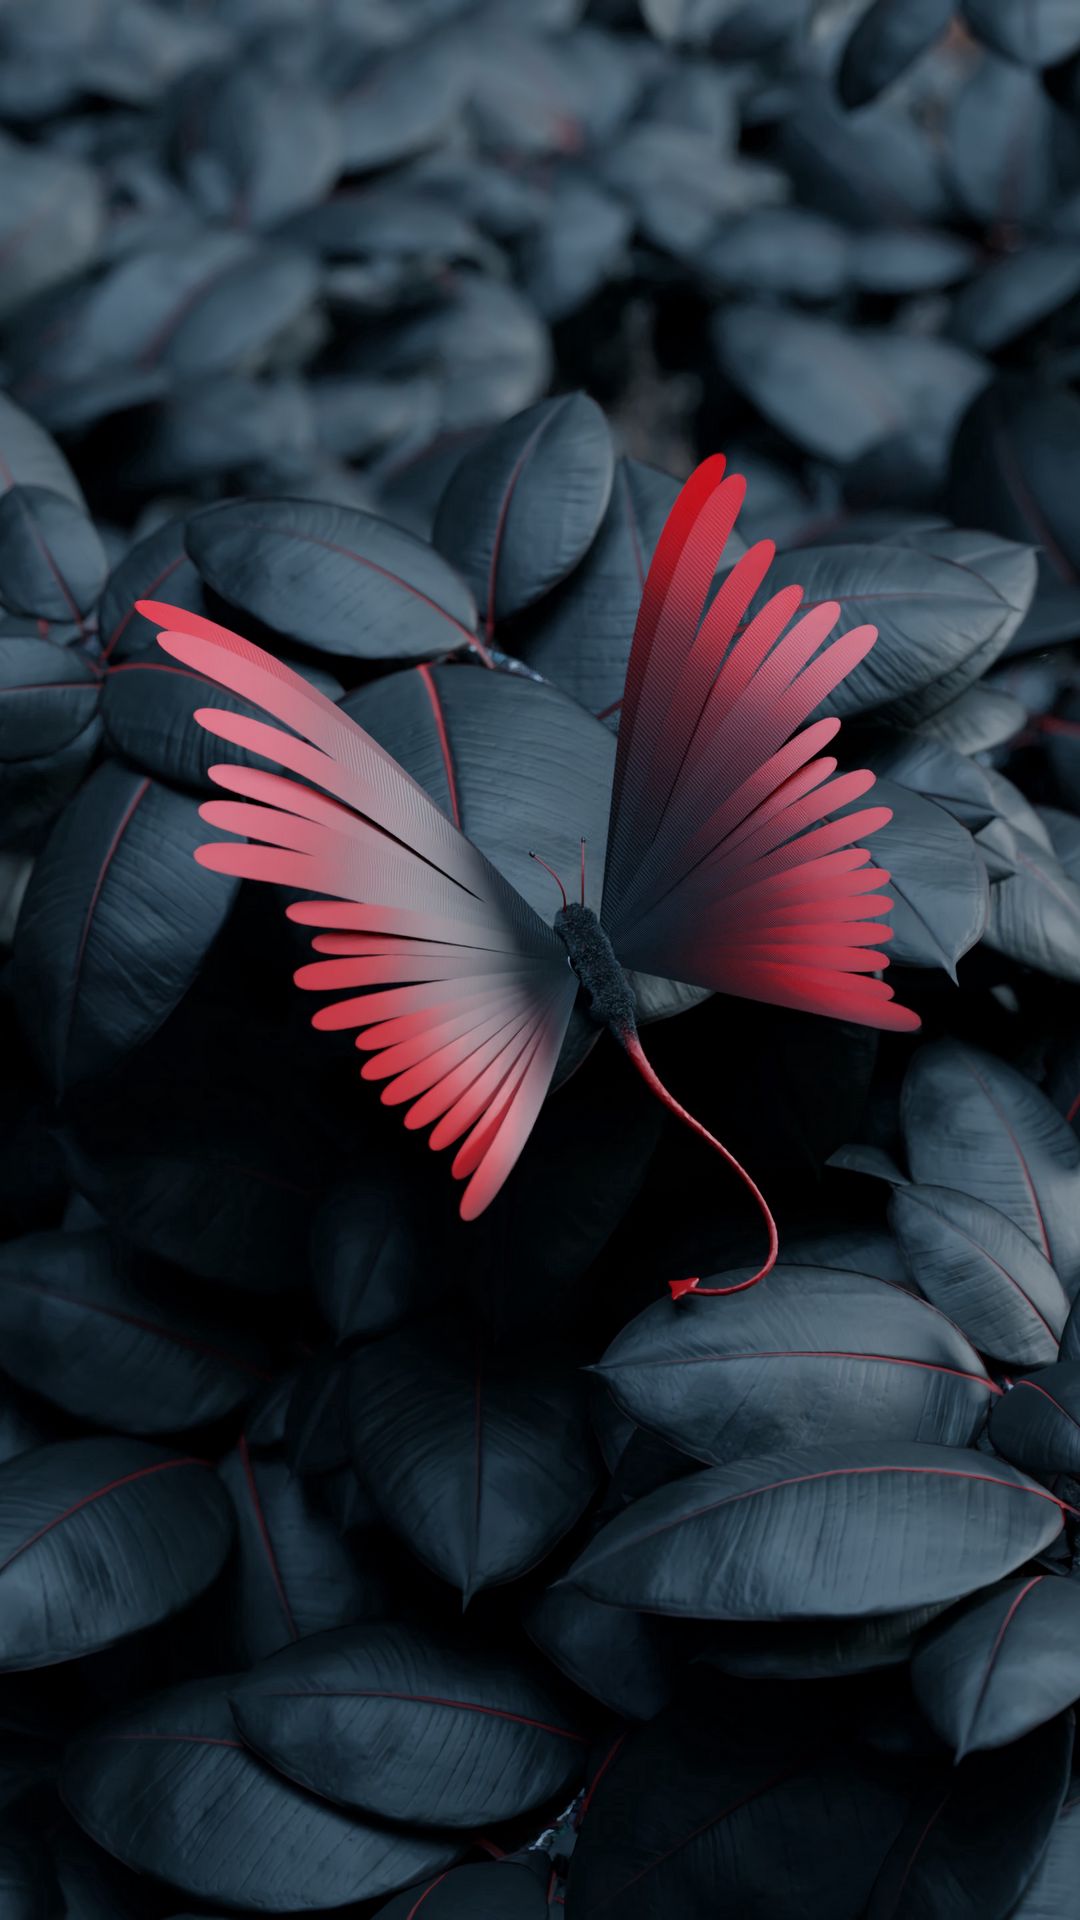 Hình nền bướm, lá, cánh, tương phản: Khám phá sự độc đáo của thiên nhiên với những bức ảnh bướm, lá và cánh với tương phản màu sắc tuyệt đẹp. Hãy thưởng thức những hình ảnh độc đáo này và cảm nhận sự tinh tế của thiên nhiên trong chi tiết nhỏ bé.